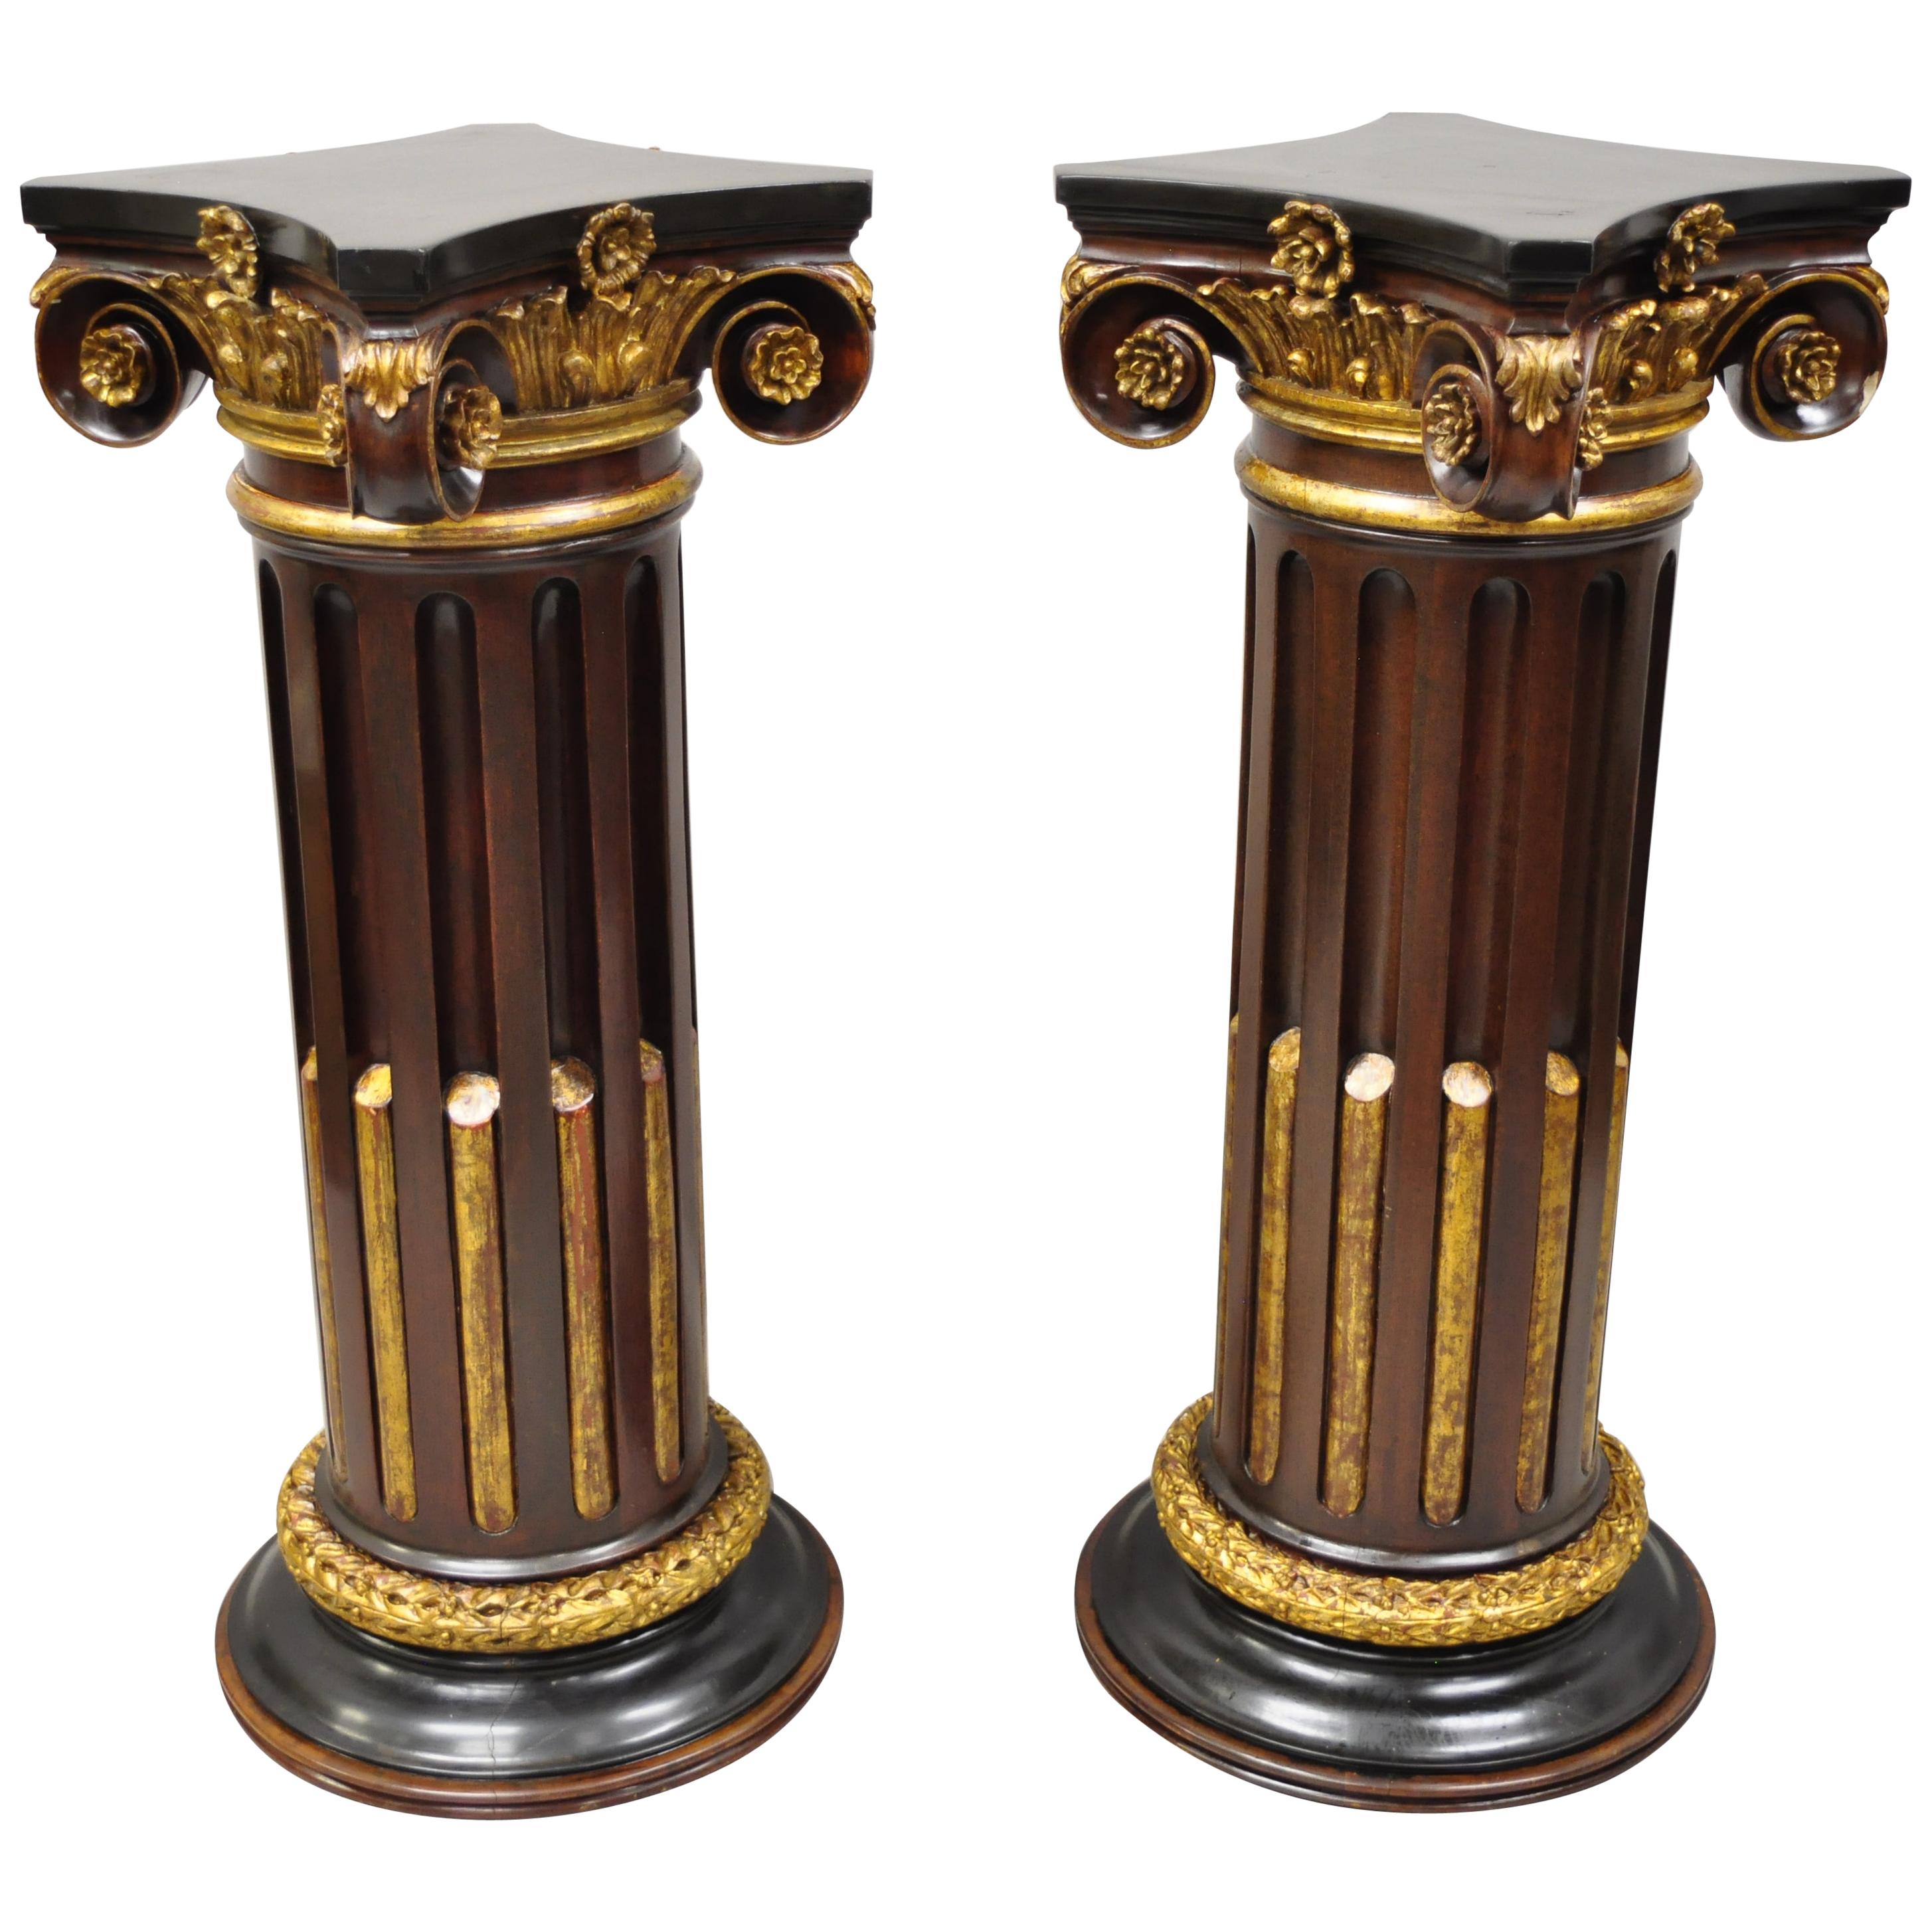 Paire de piédestaux à colonnes corinthiennes classiques italiennes sculptés et dorés à l'or polychrome